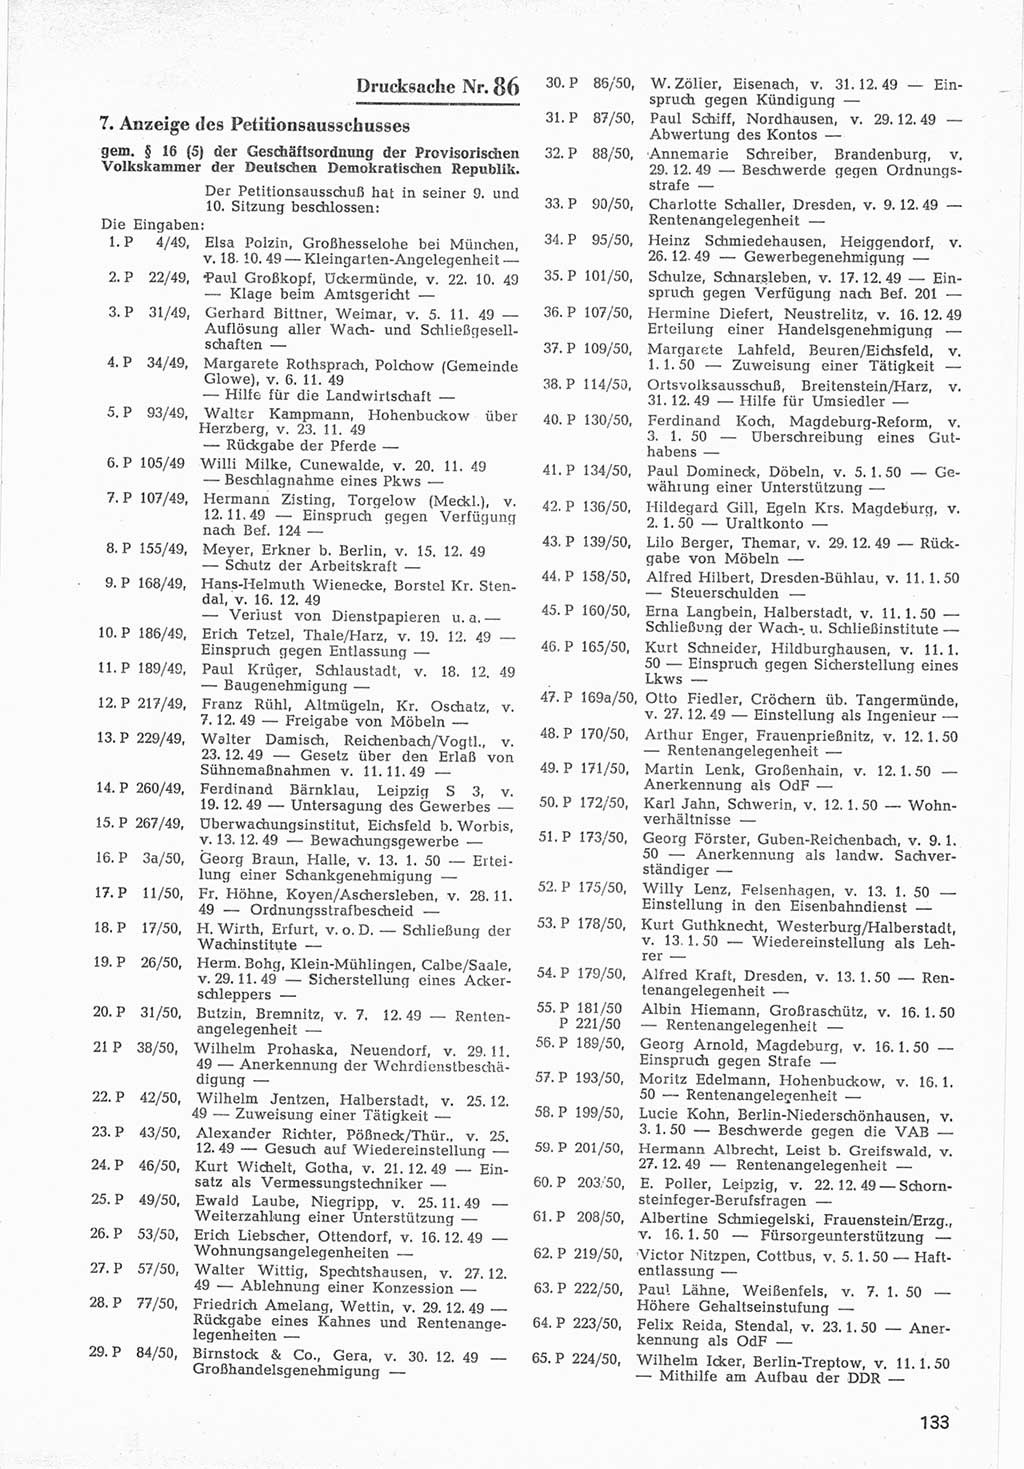 Provisorische Volkskammer (VK) der Deutschen Demokratischen Republik (DDR) 1949-1950, Dokument 735 (Prov. VK DDR 1949-1950, Dok. 735)